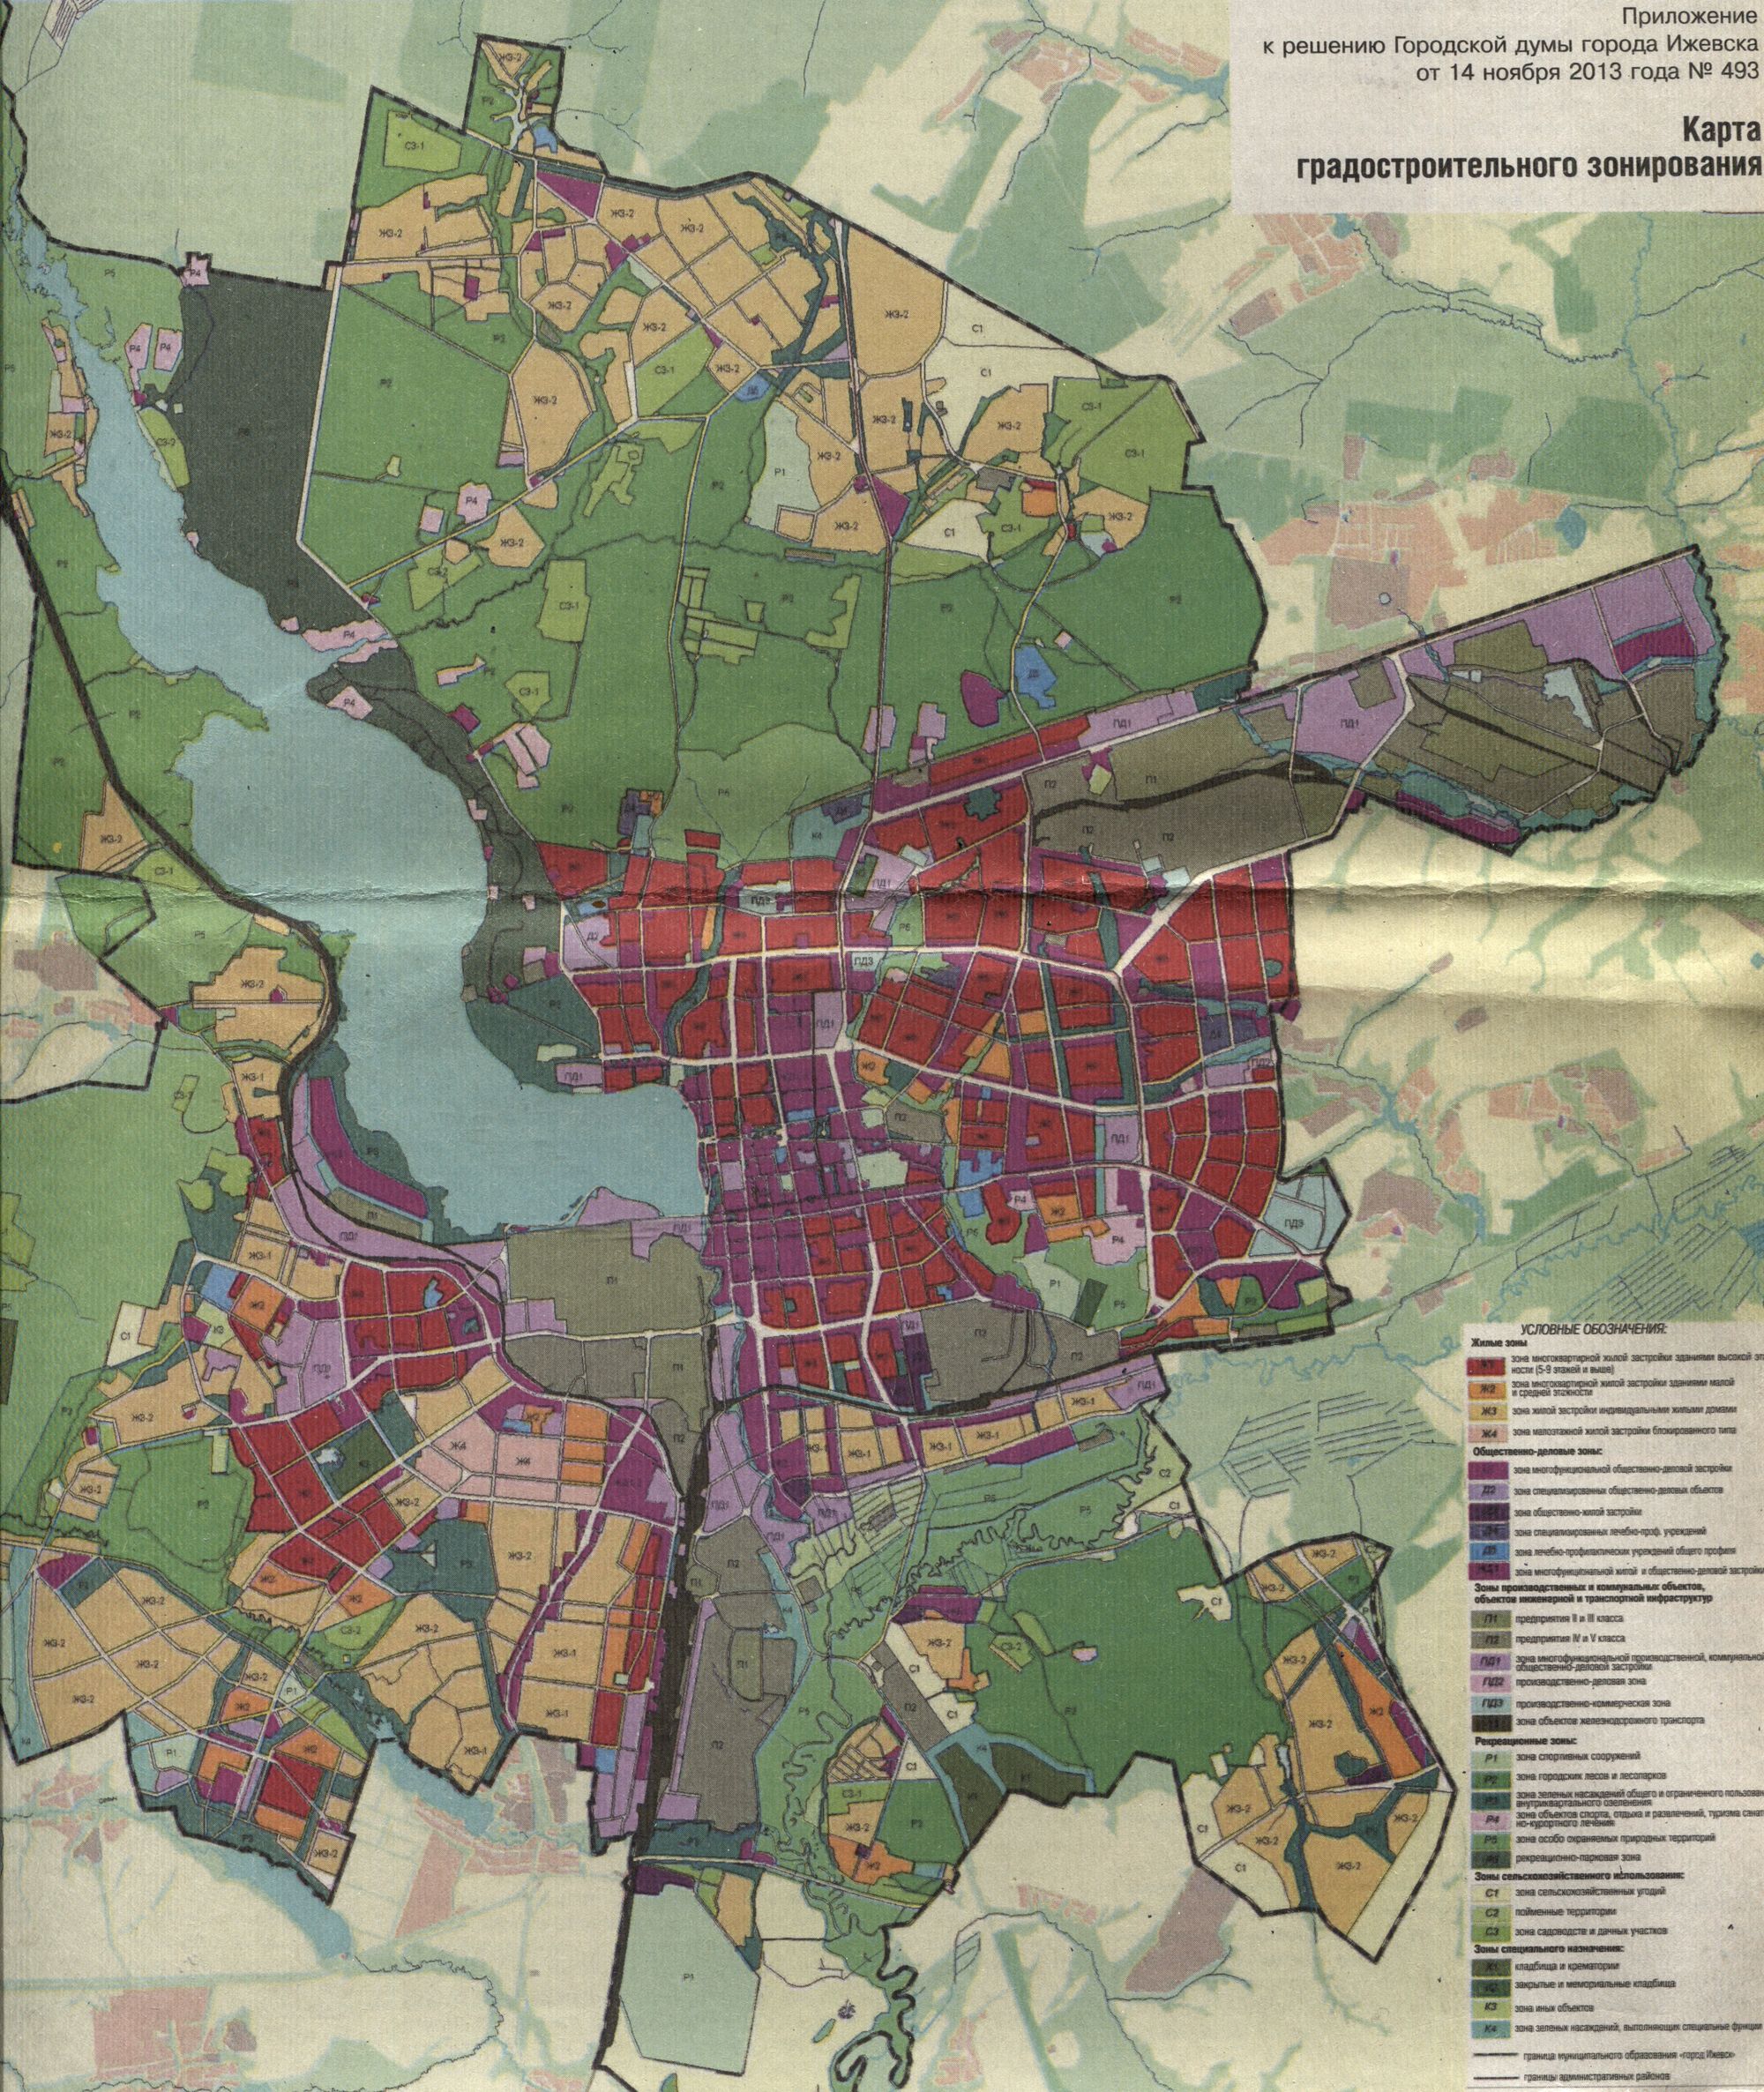 Карта градостроительного зонирования. Приложение к решению Городской думы города Ижевска от 14 ноября 2013 года №493.